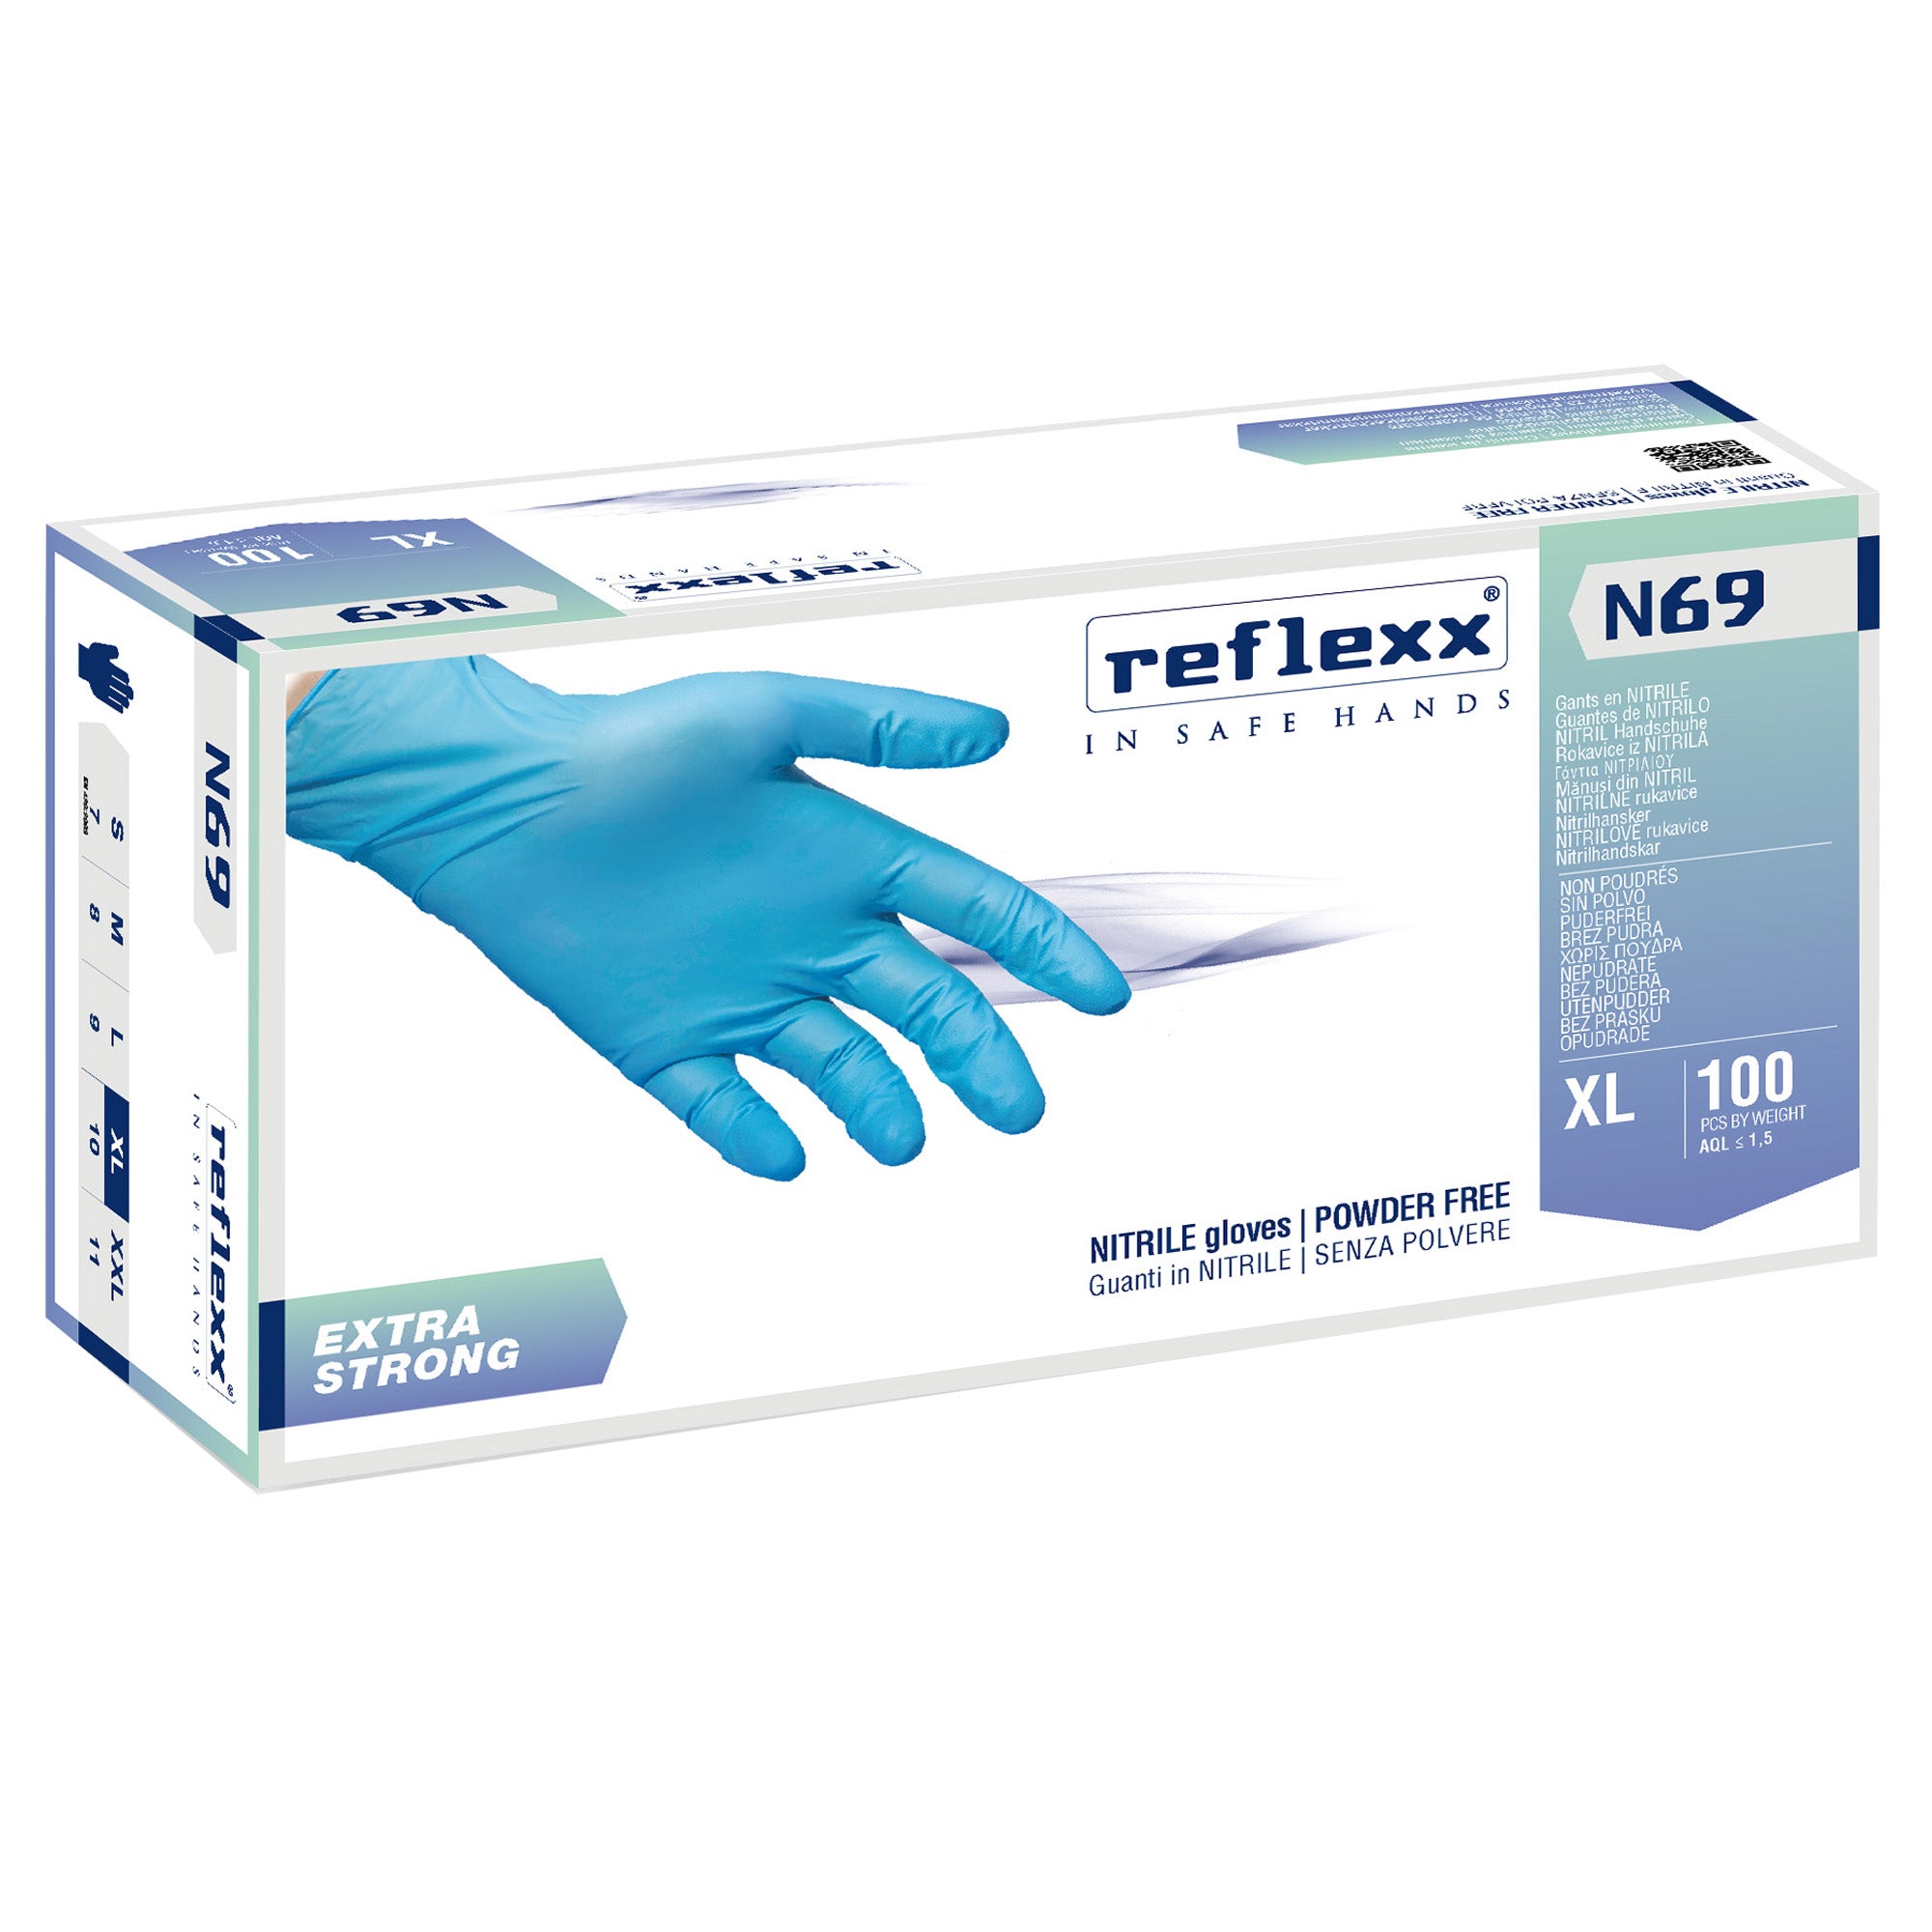 reflexx-conf-100-guanti-nitrile-n69-taglia-xl-azzurri-extrastrong